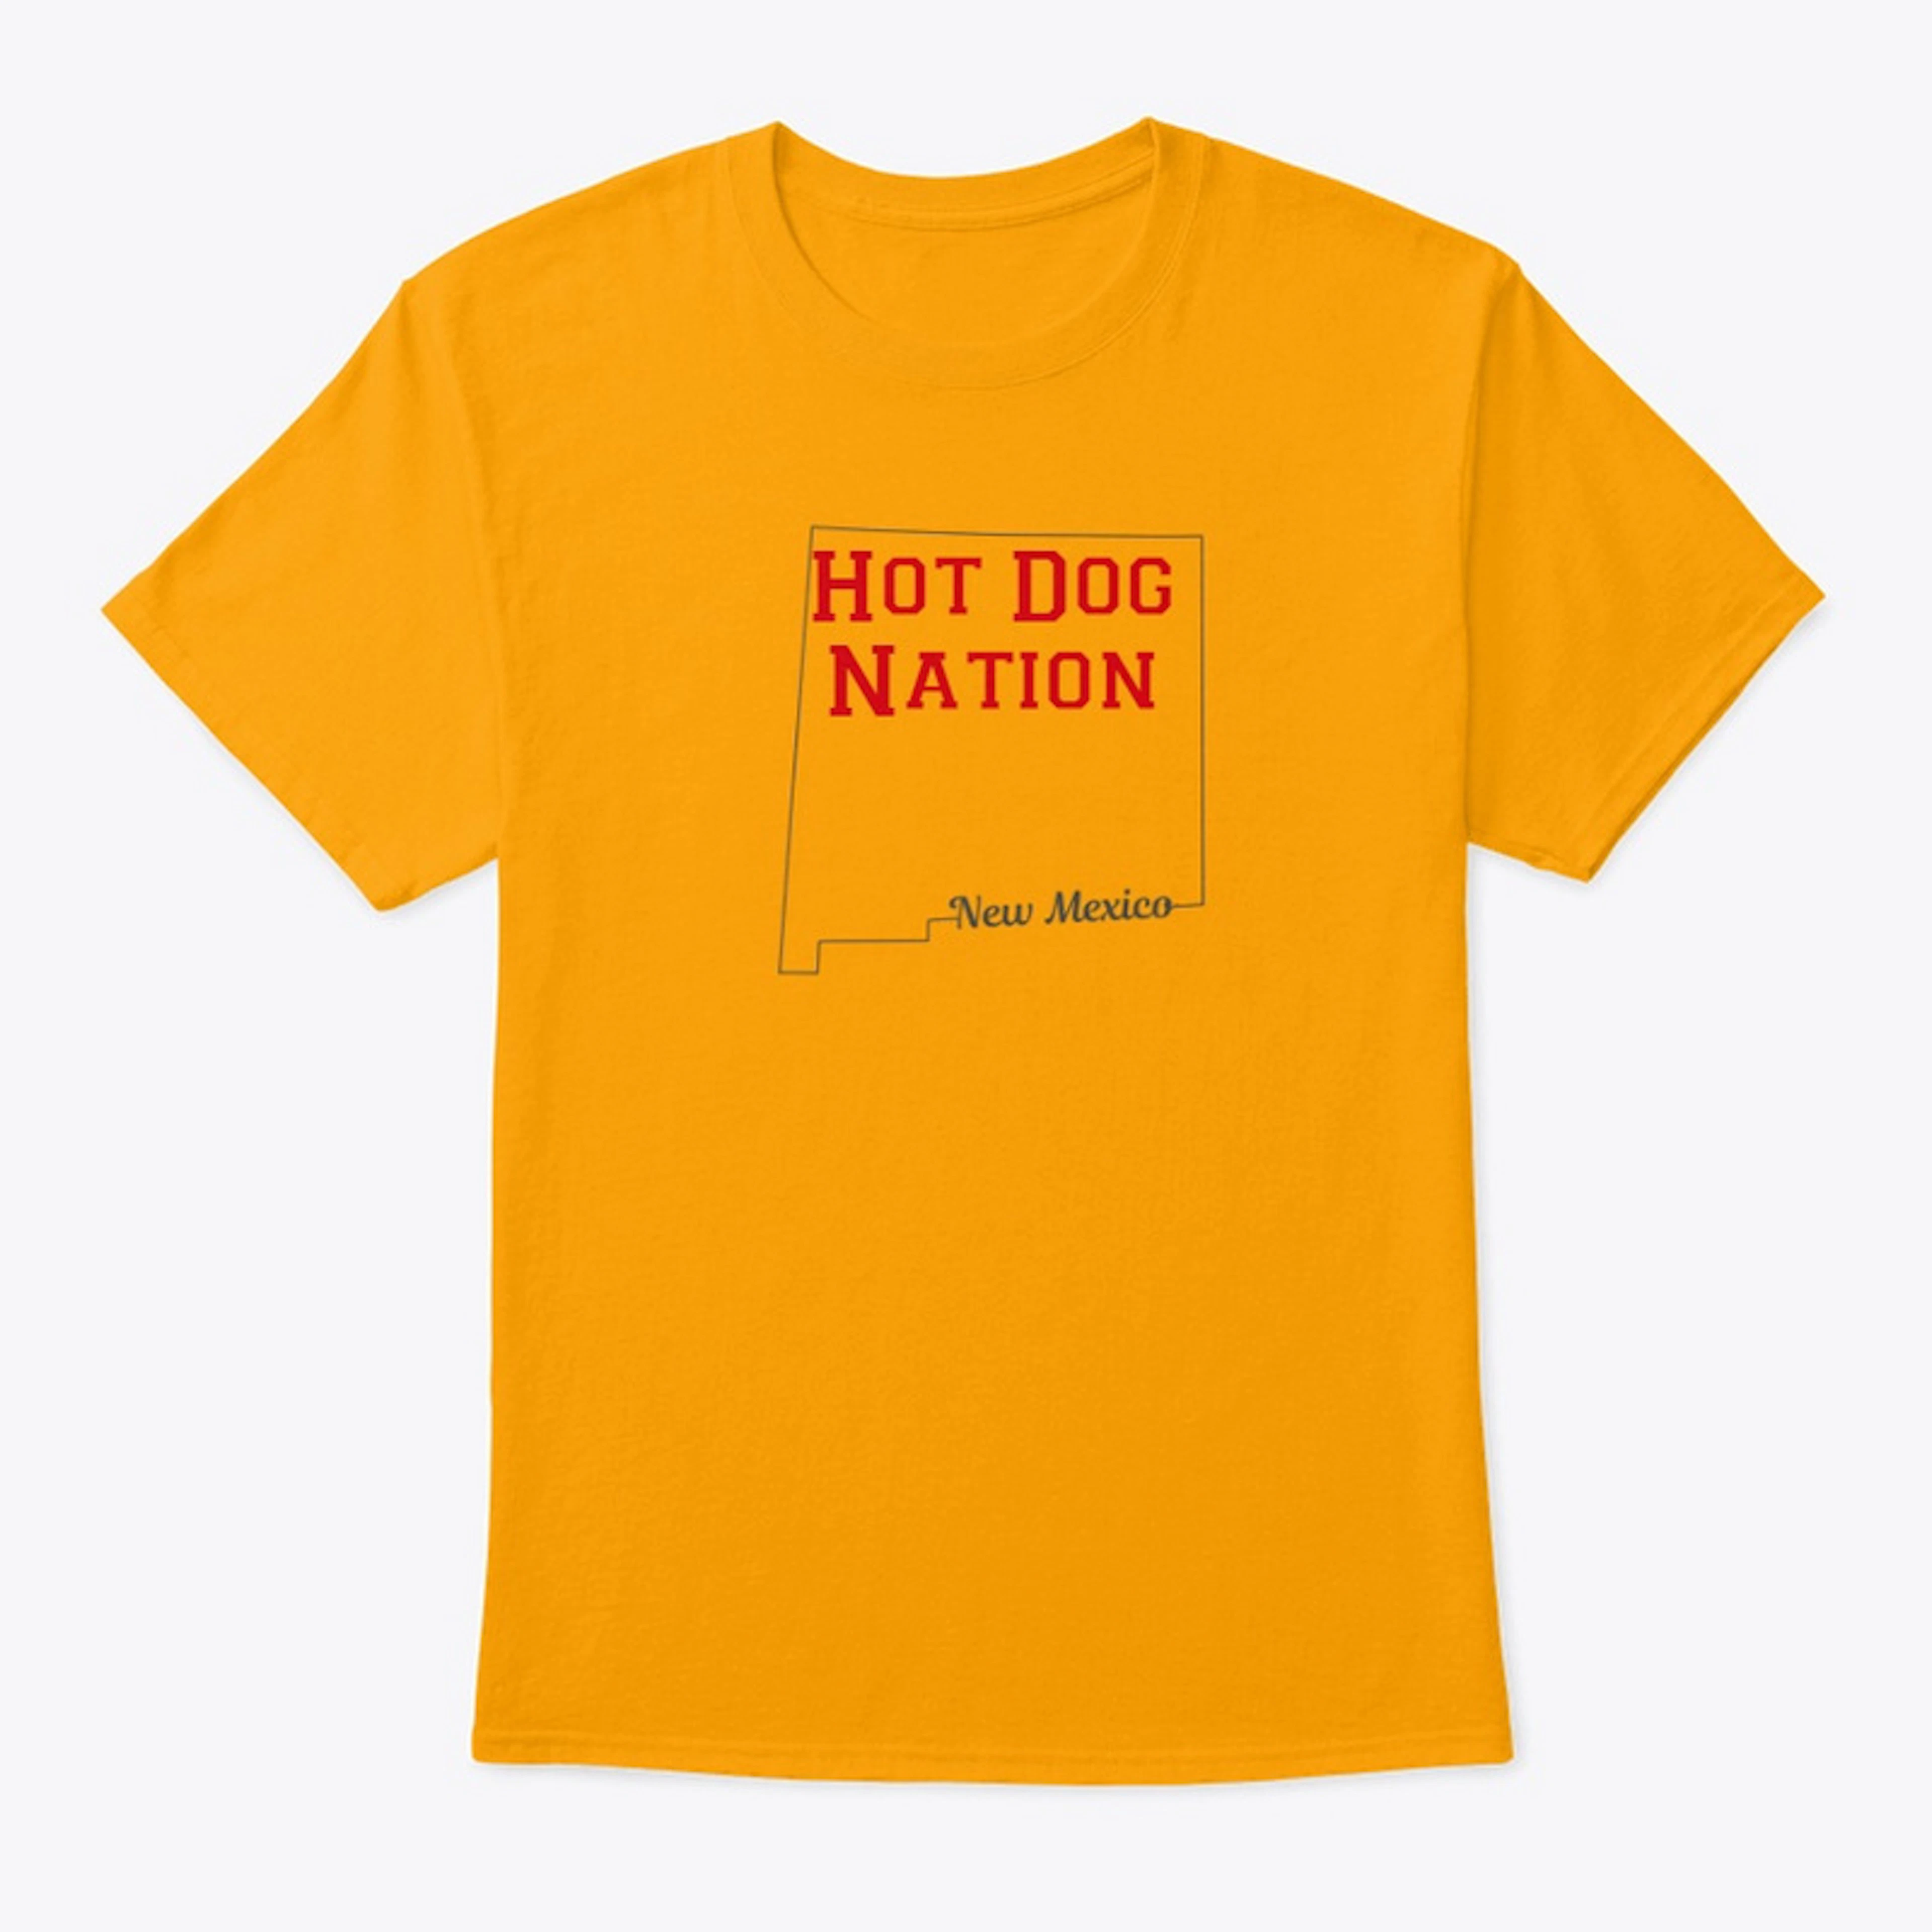 Hot Dog Nation - New Mexico